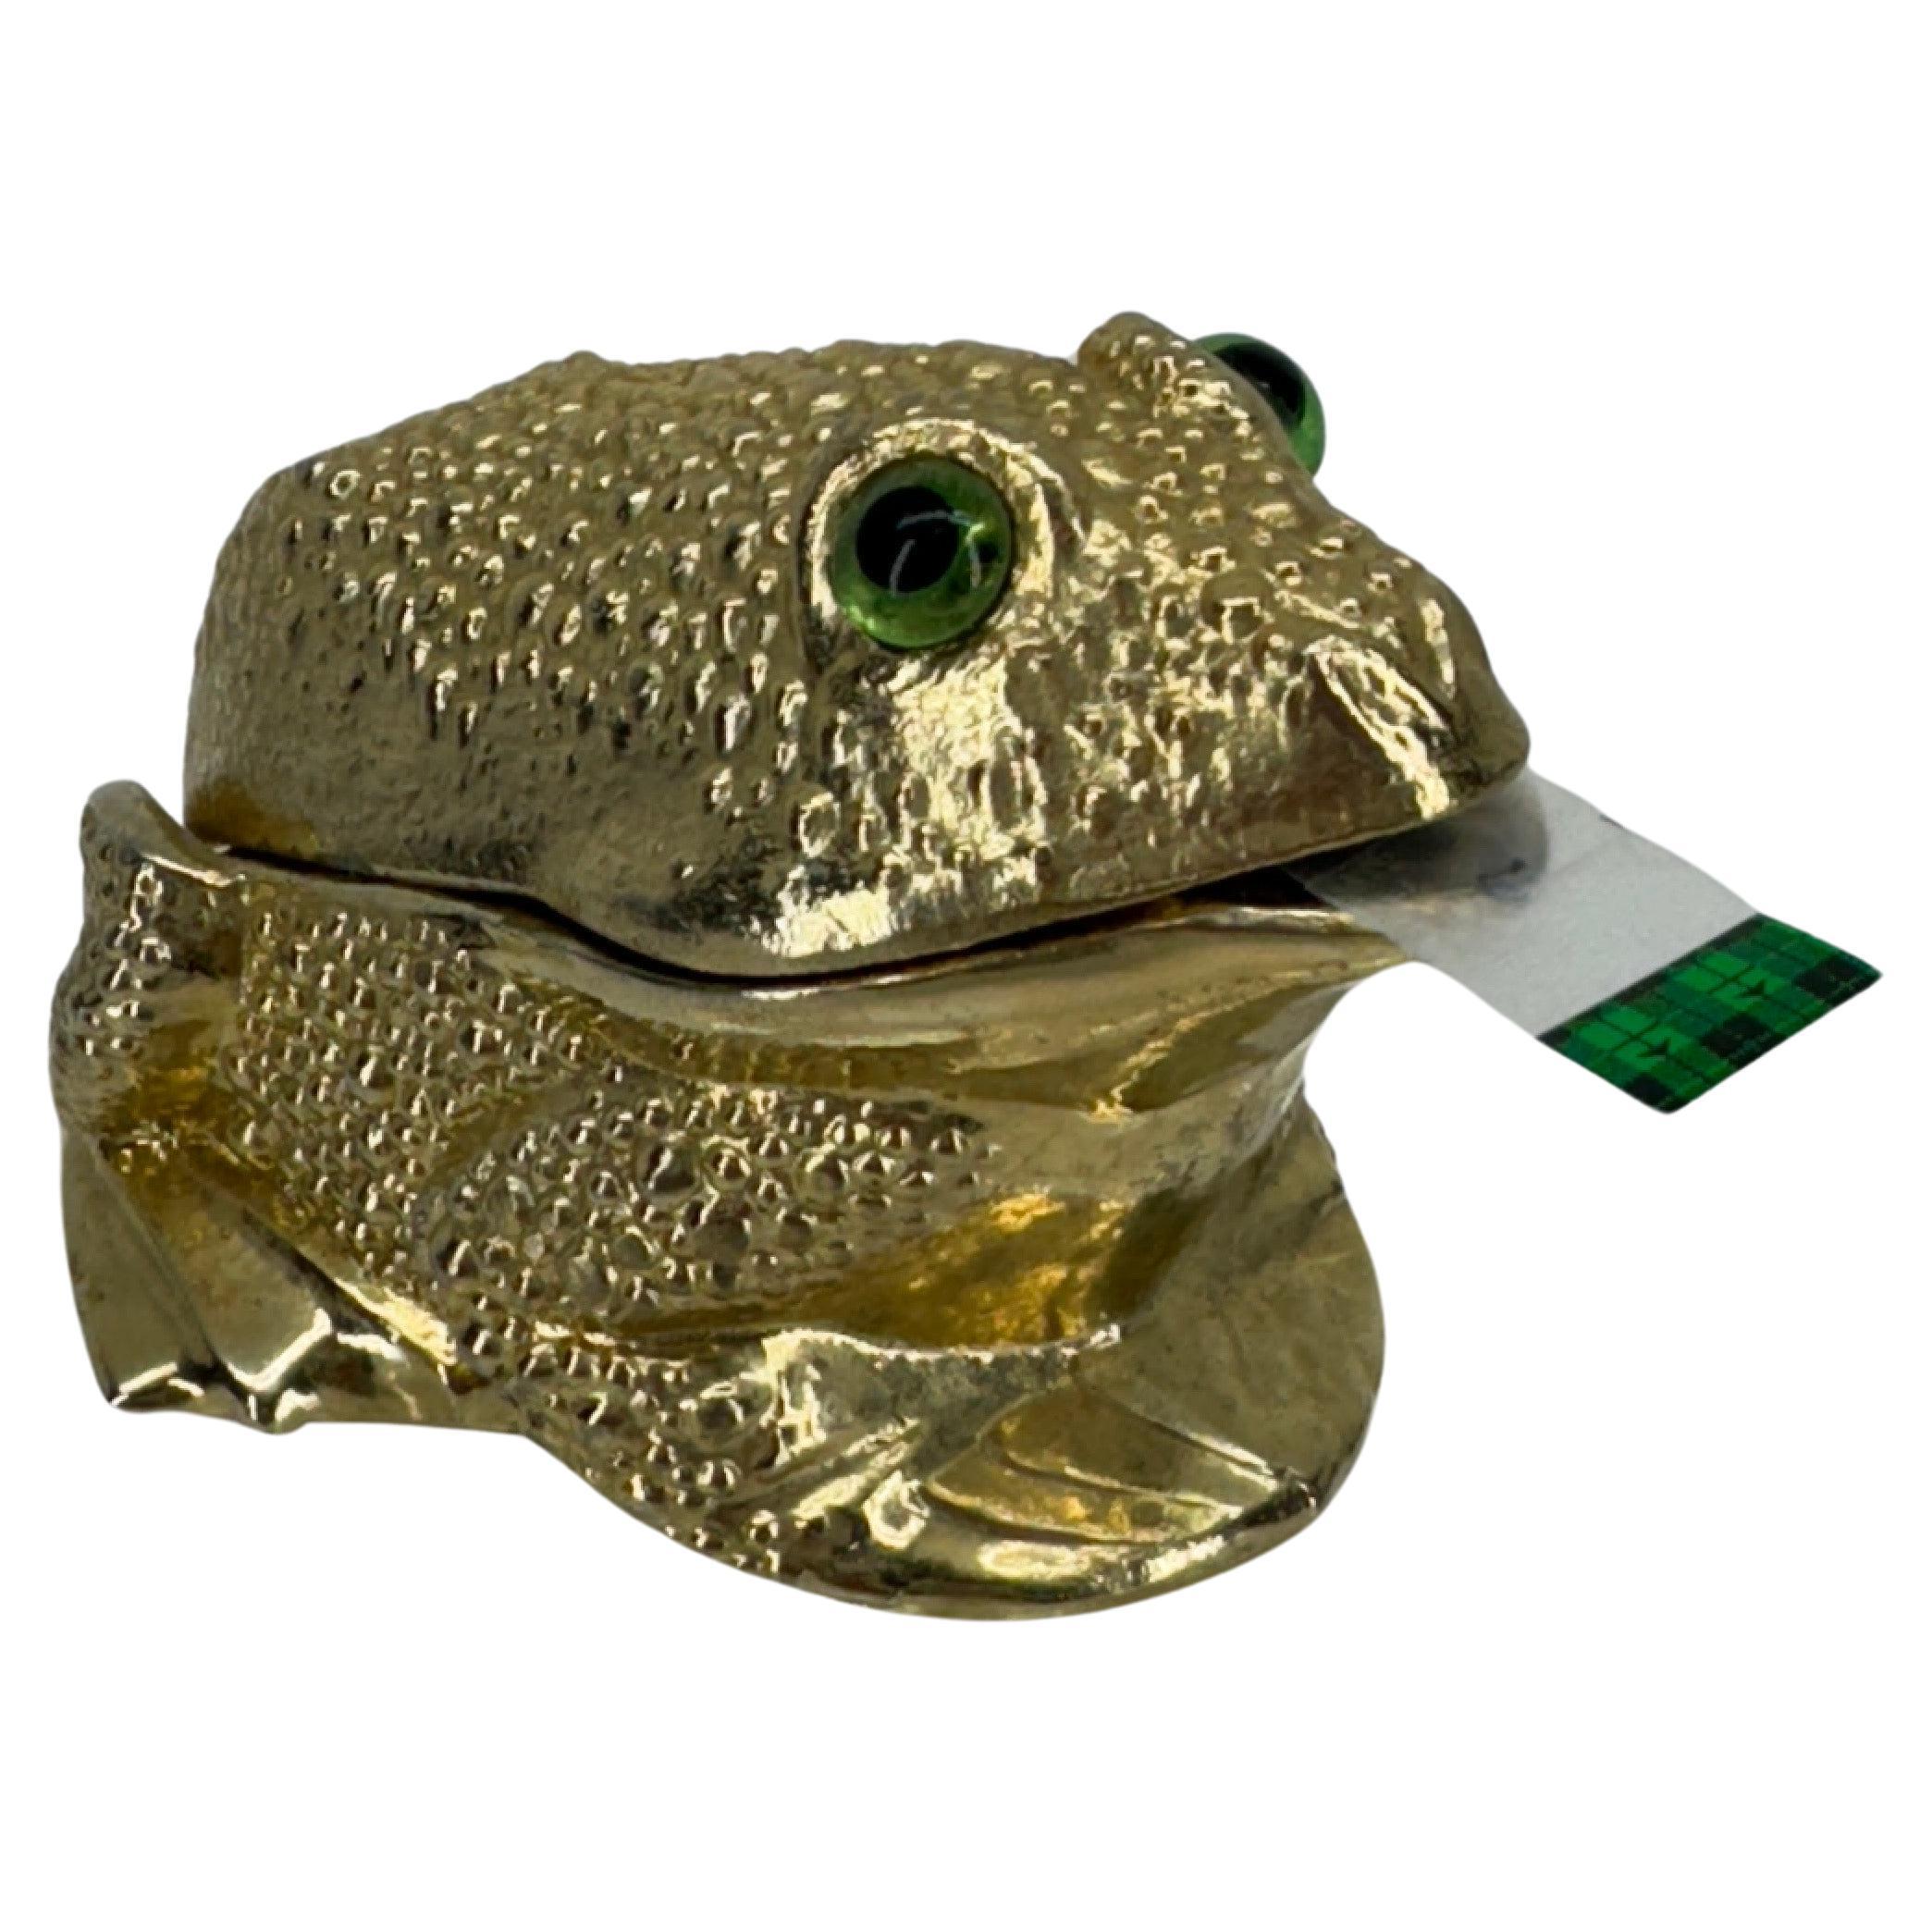 Dérouleur de ruban grenouille en métal doré texturé, années 1960

Ce dévidoir de ruban adhésif vintage en deux parties provient de Ted Arnold Ltd. La charmante grenouille aux yeux de verre verts est estampillée sur le couvercle intérieur. Cette